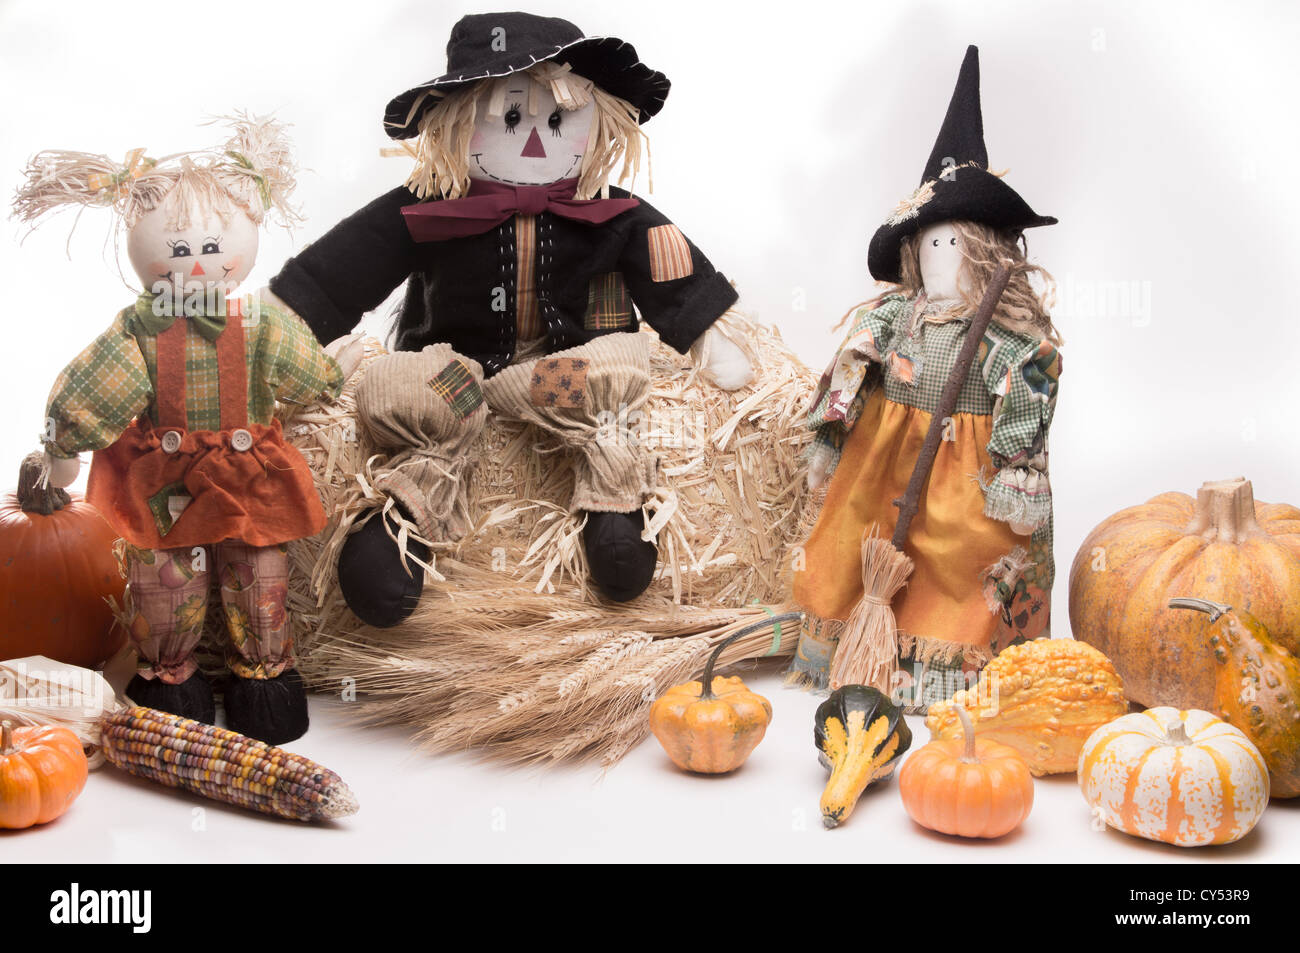 La famille de l'Épouvantail sur botte avec des citrouilles, le maïs, le blé, les gourdes, les tiges et les courges. Isolé sur fond blanc Banque D'Images